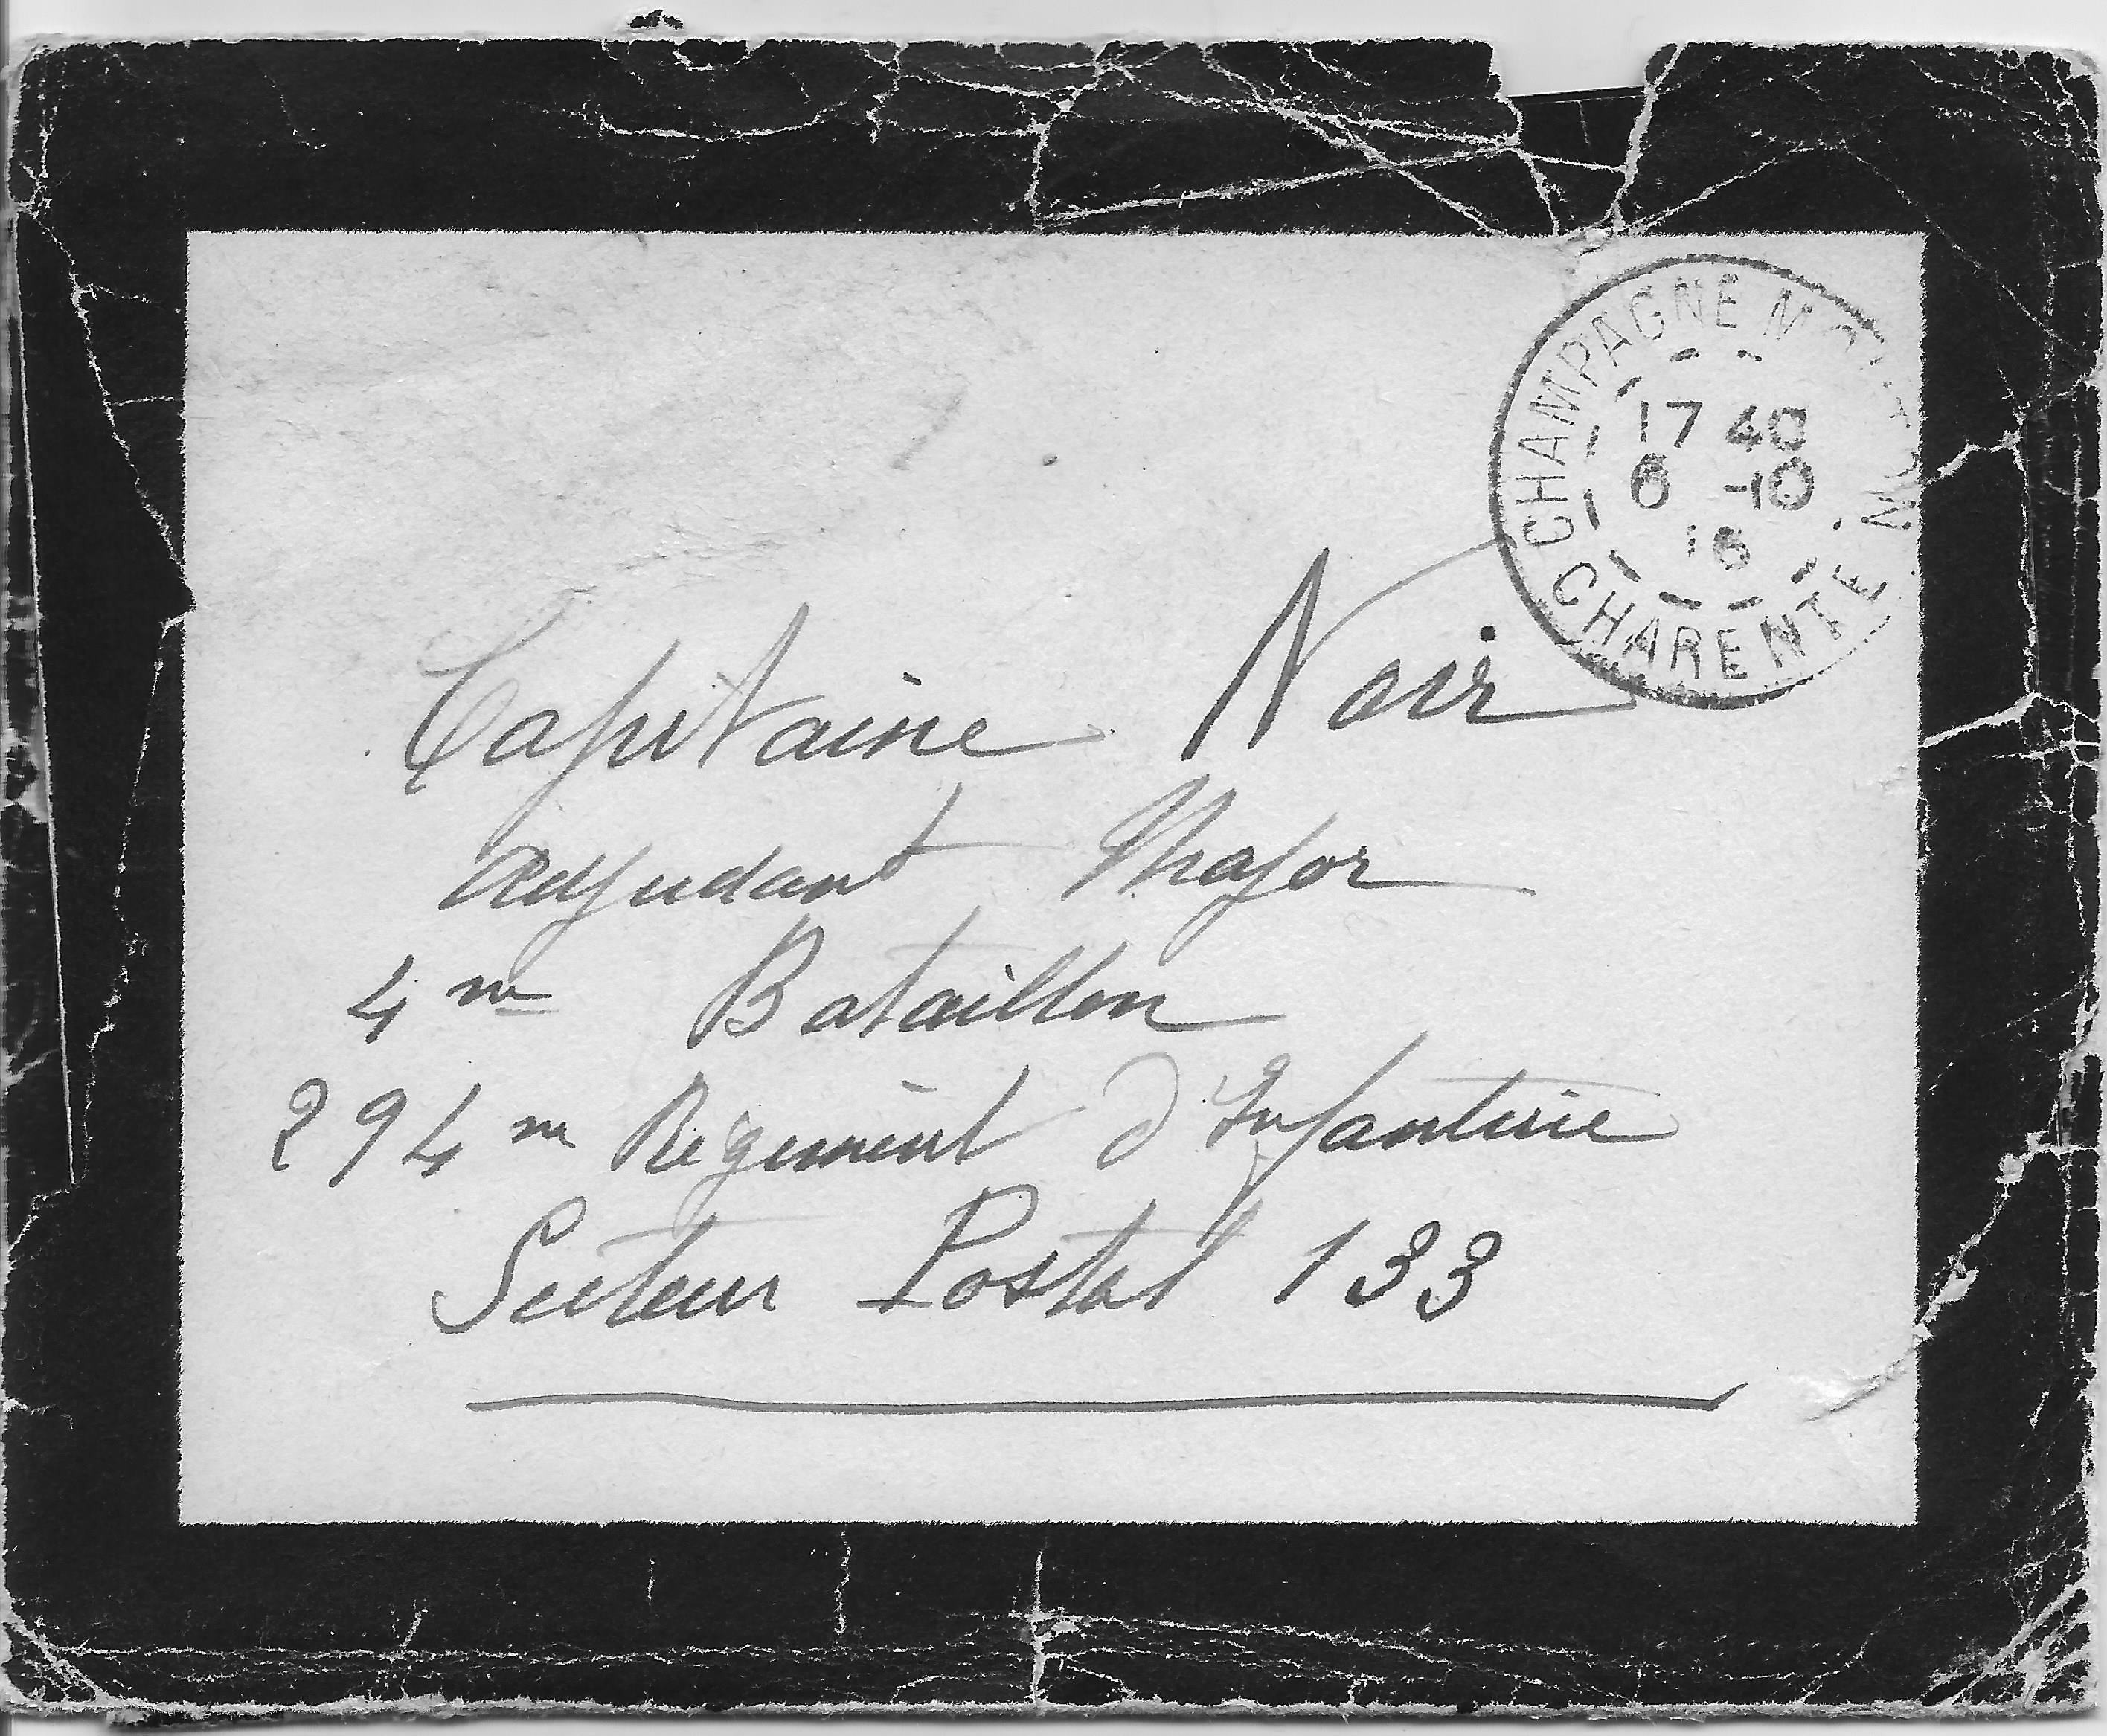 5 Enveloppe datée du 6 octobre 1916 de la lettre de Suzanne, sa belle soeur, à Octave 06 octobre 1916.jpg